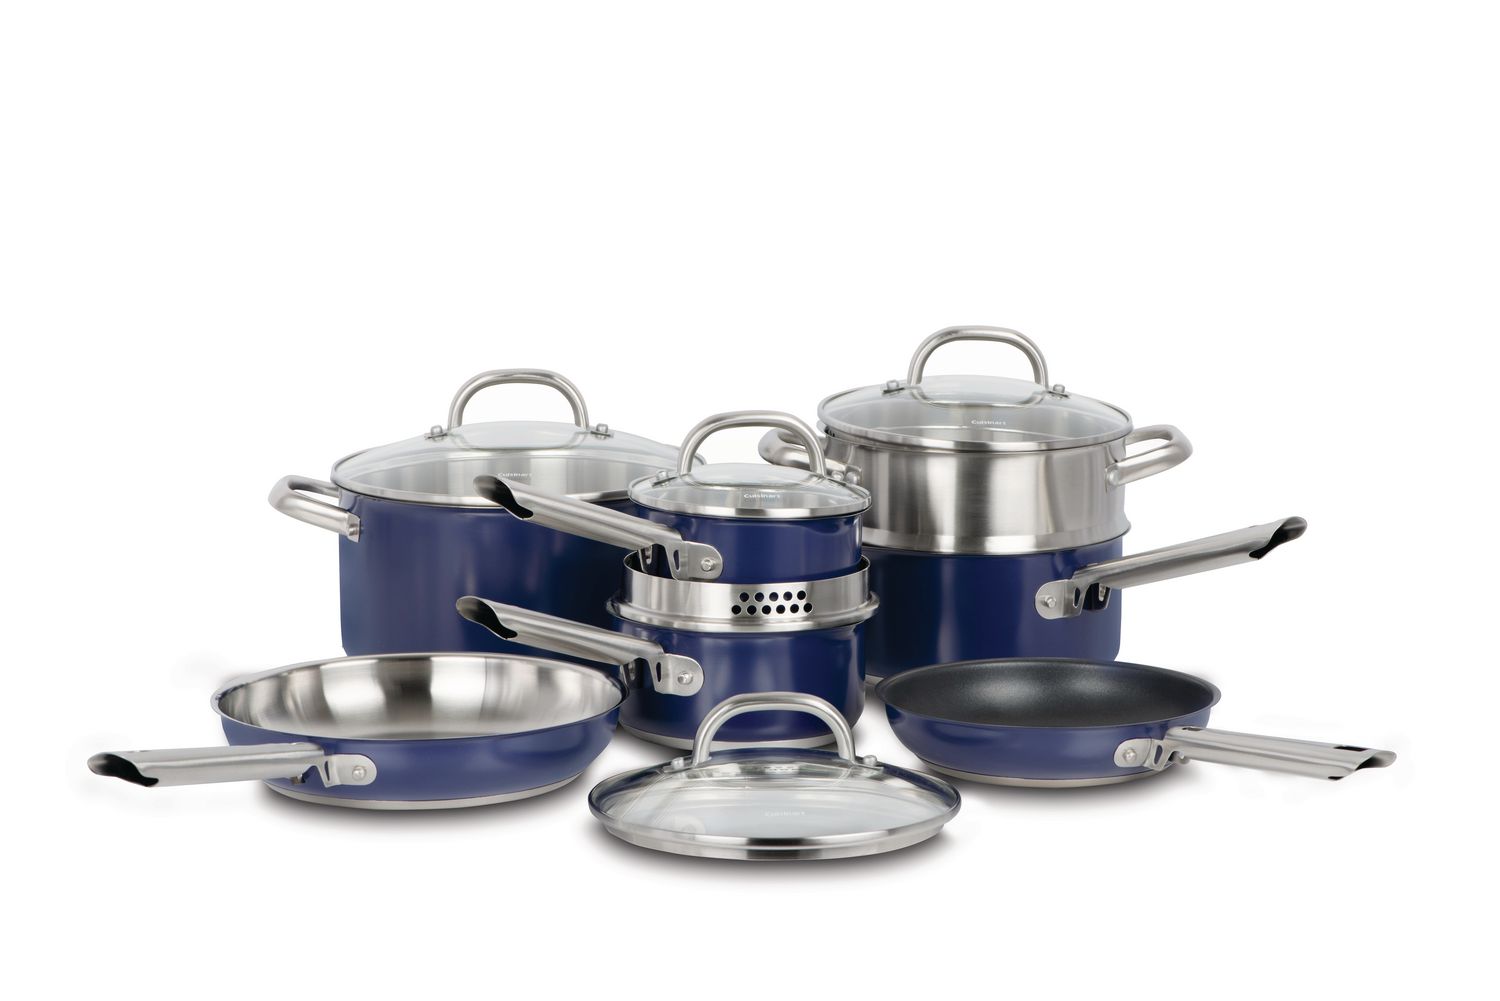 Cuisinart 12 Piece Blue Stainless Steel Cookware Set -88-12BC | Walmart Cuisinart 12 Piece Stainless Steel Cookware Set